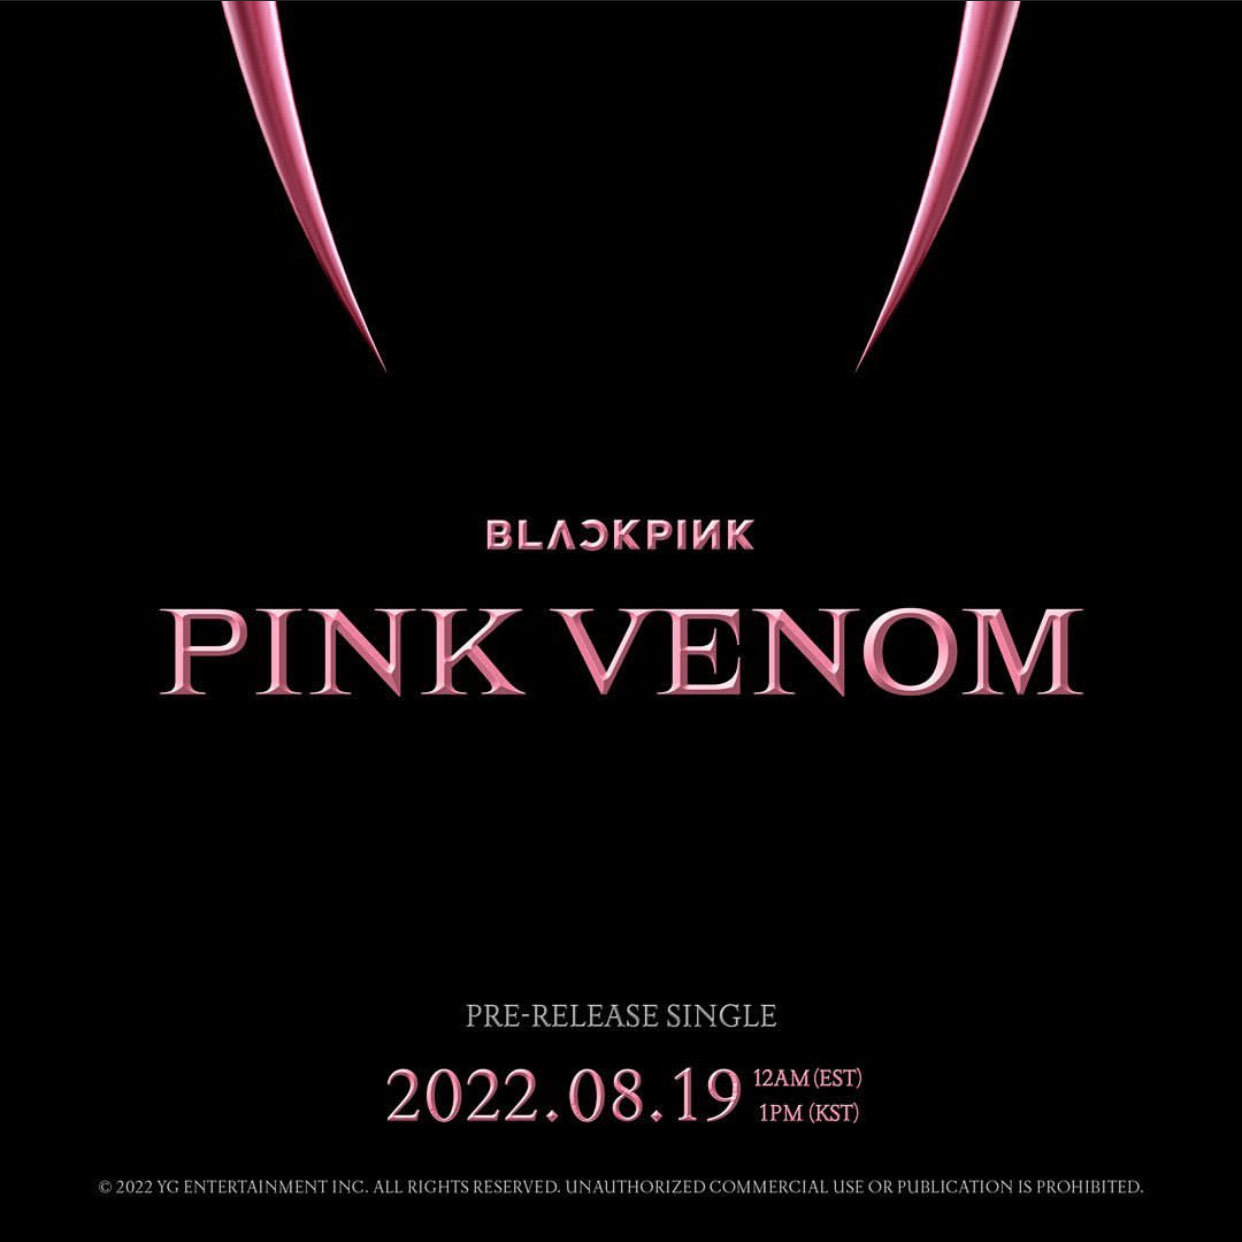 blackpink comeback 2022 pink venom - BLACKPINK khởi động tour lưu diễn 2022-2023